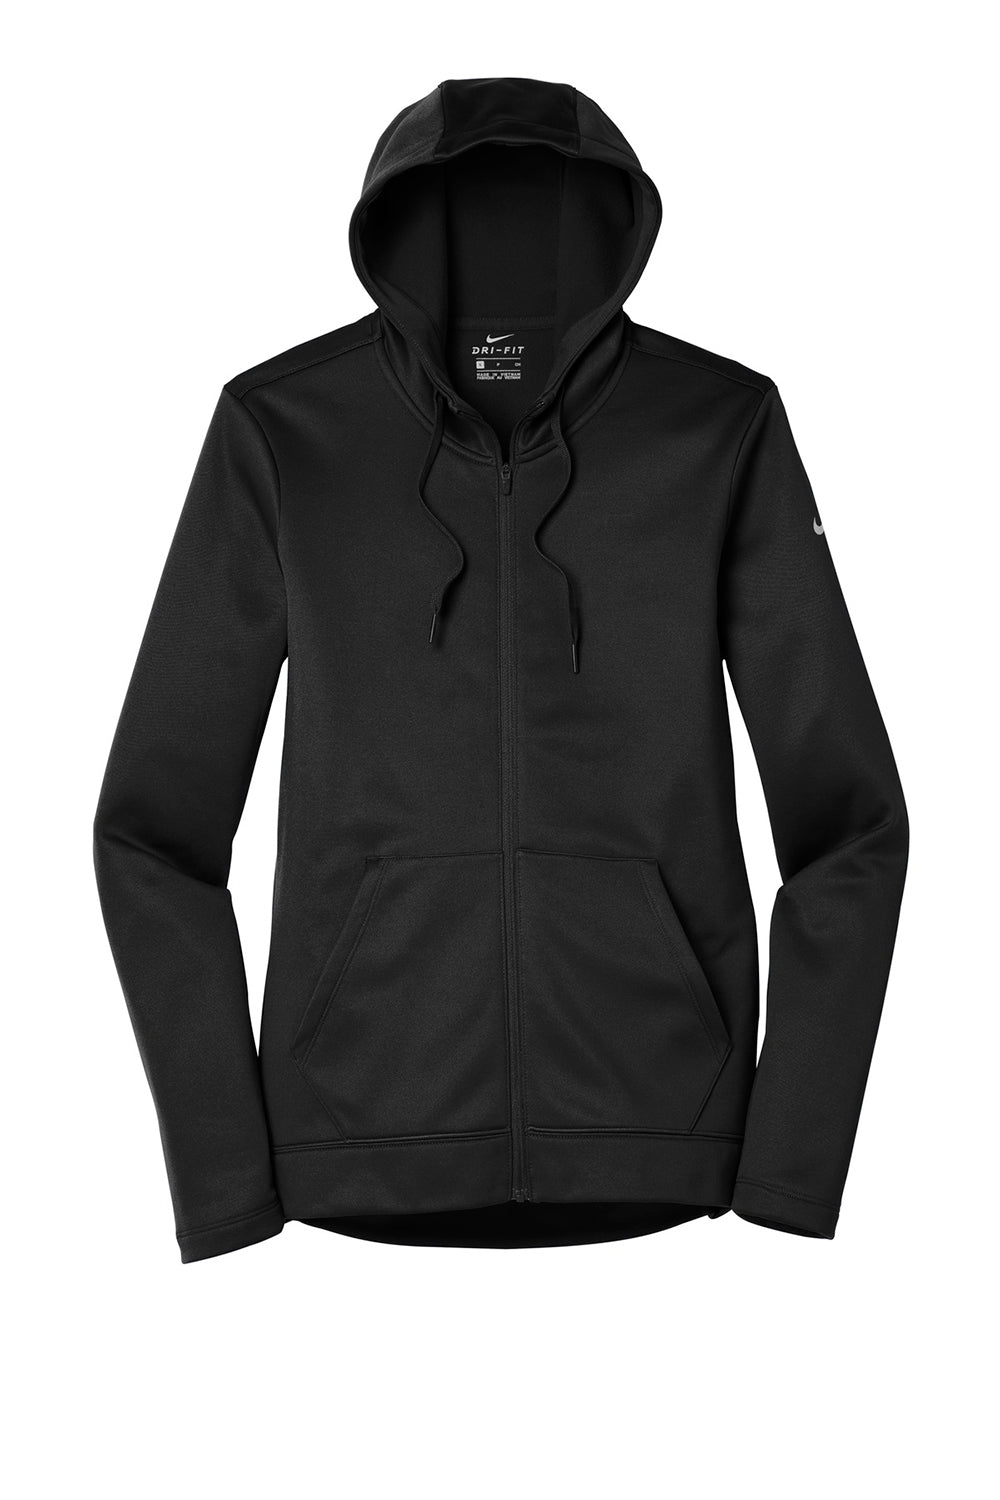 Nike NKAH6264 Womens Therma-Fit Moisture Wicking Fleece Full Zip Hooded Sweatshirt Hoodie Black Flat Front